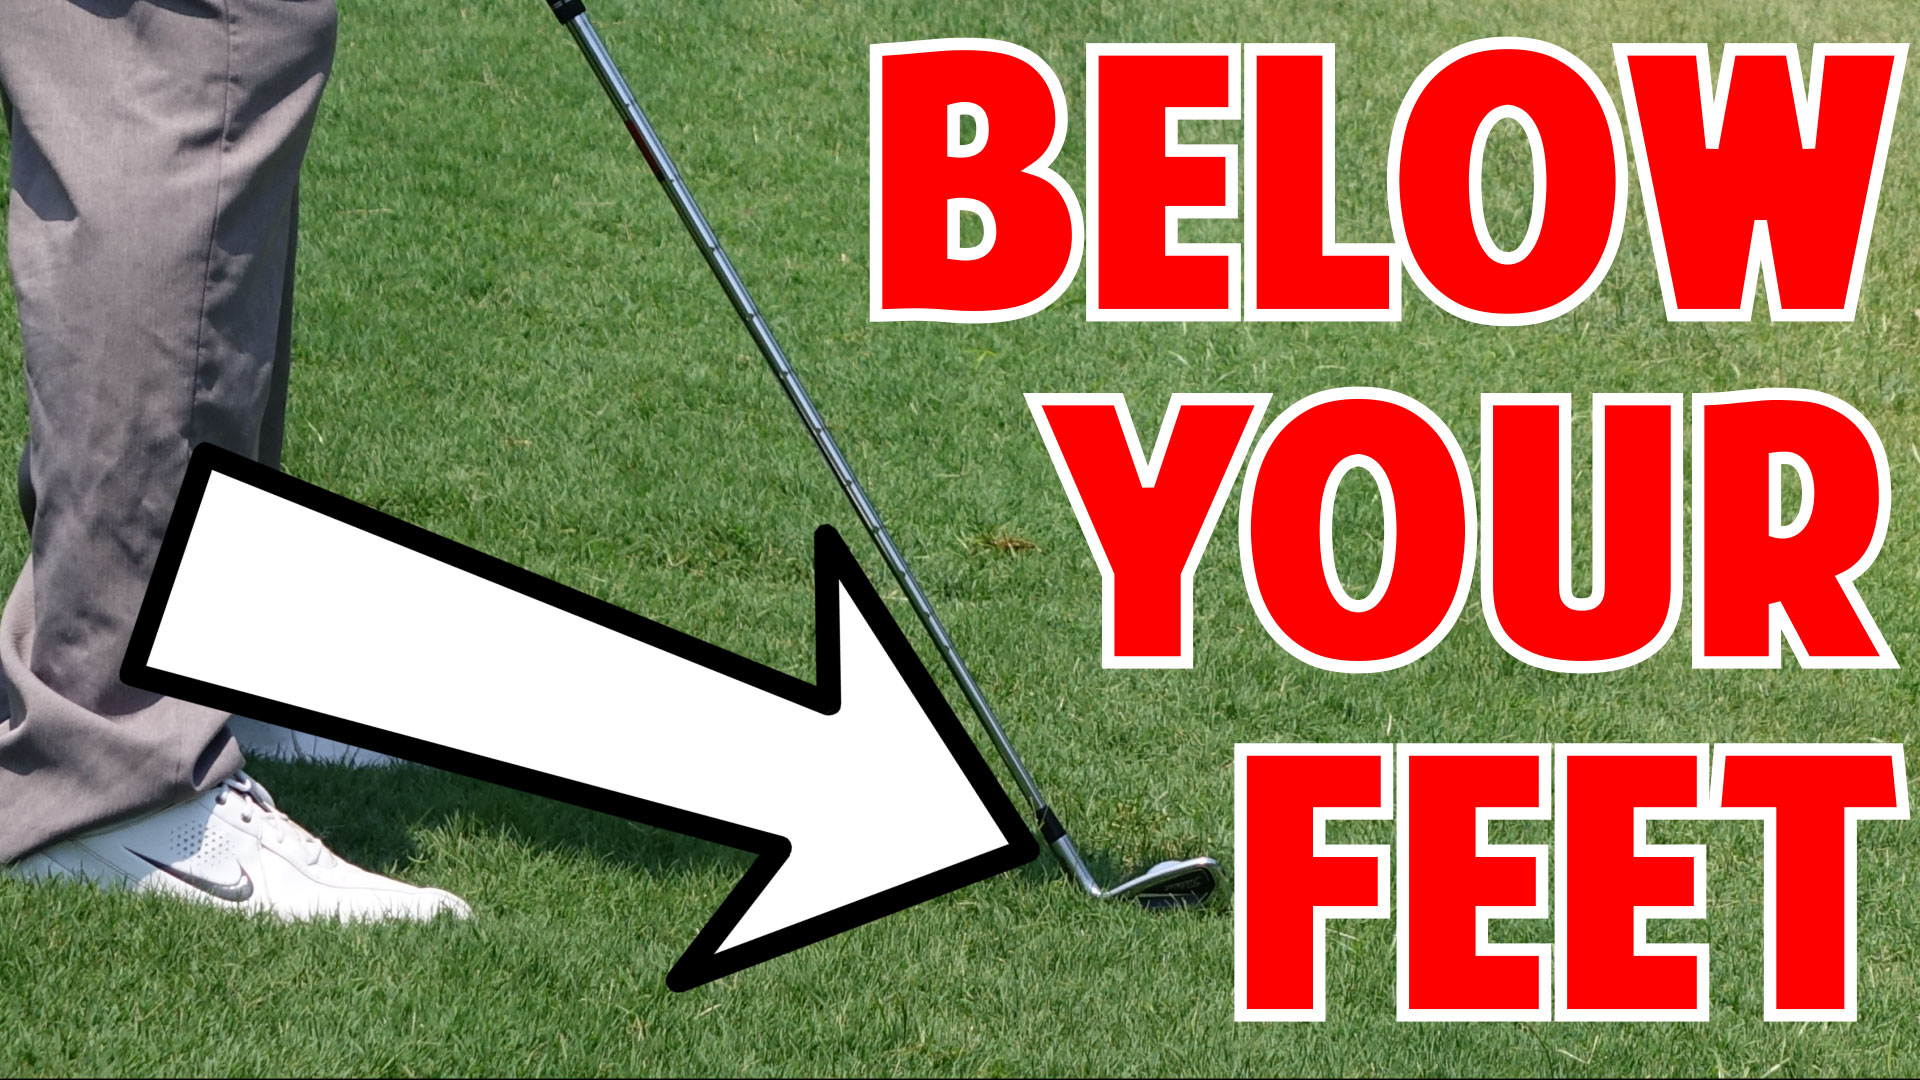 Golf Tip | How to Hit a Ball Below Your Feet • Top Speed Golf